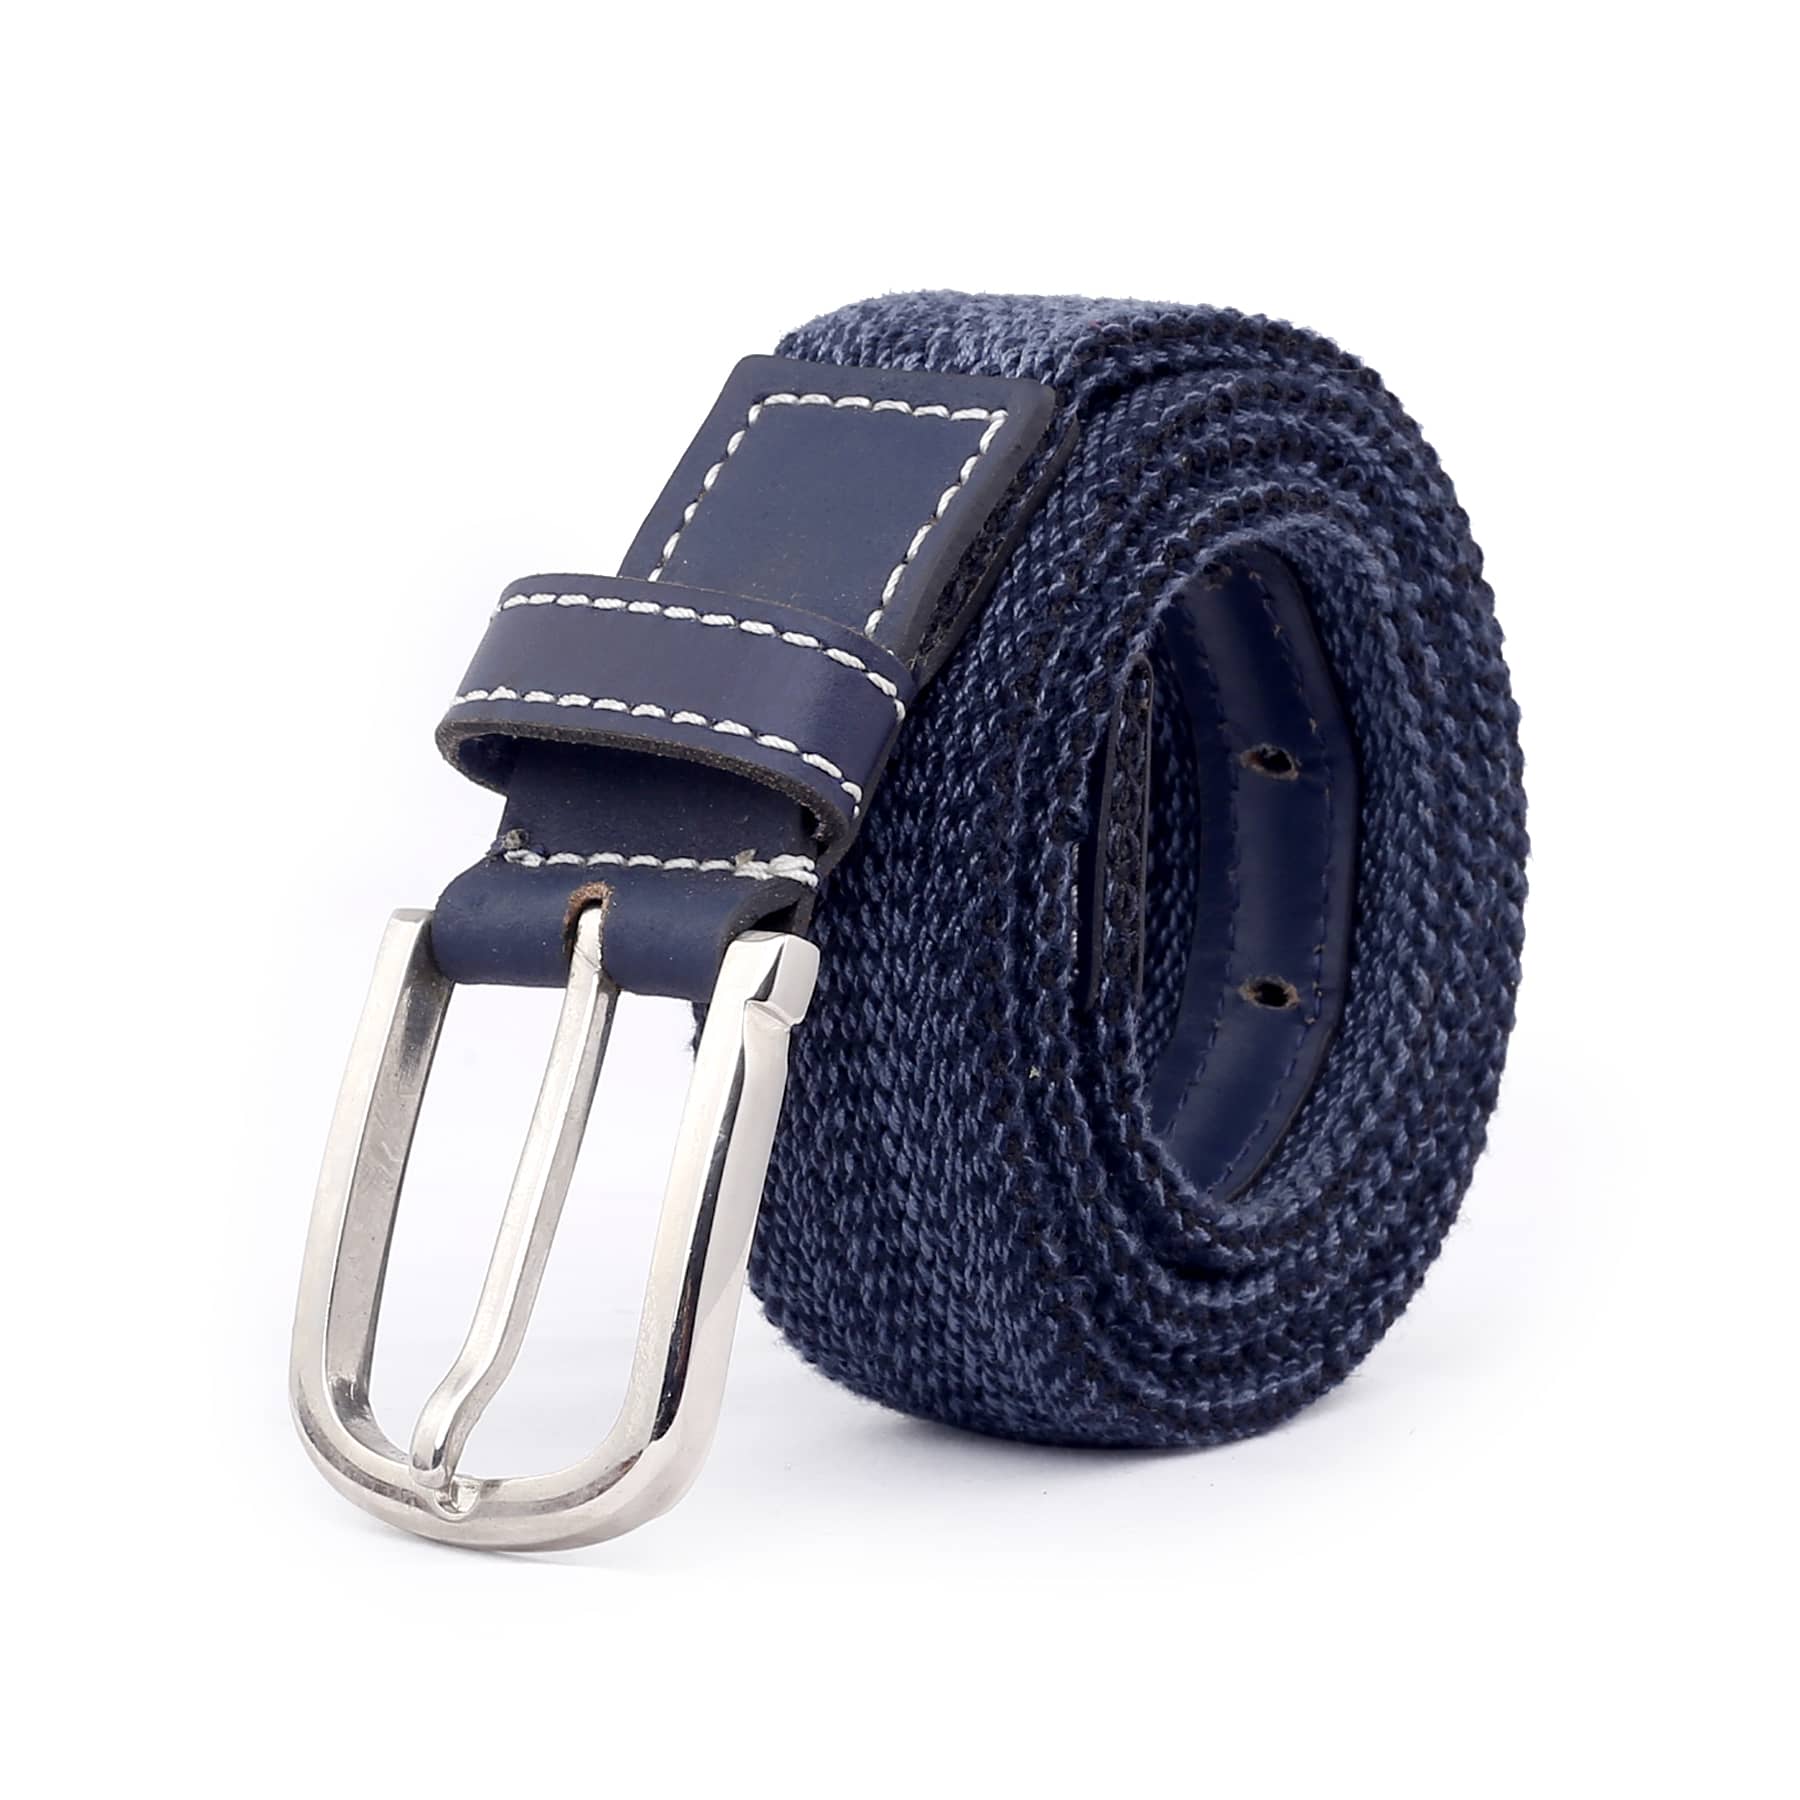 Bacca Bucci Men's Comfort Stretch Casual Fabric Belts-BLUE